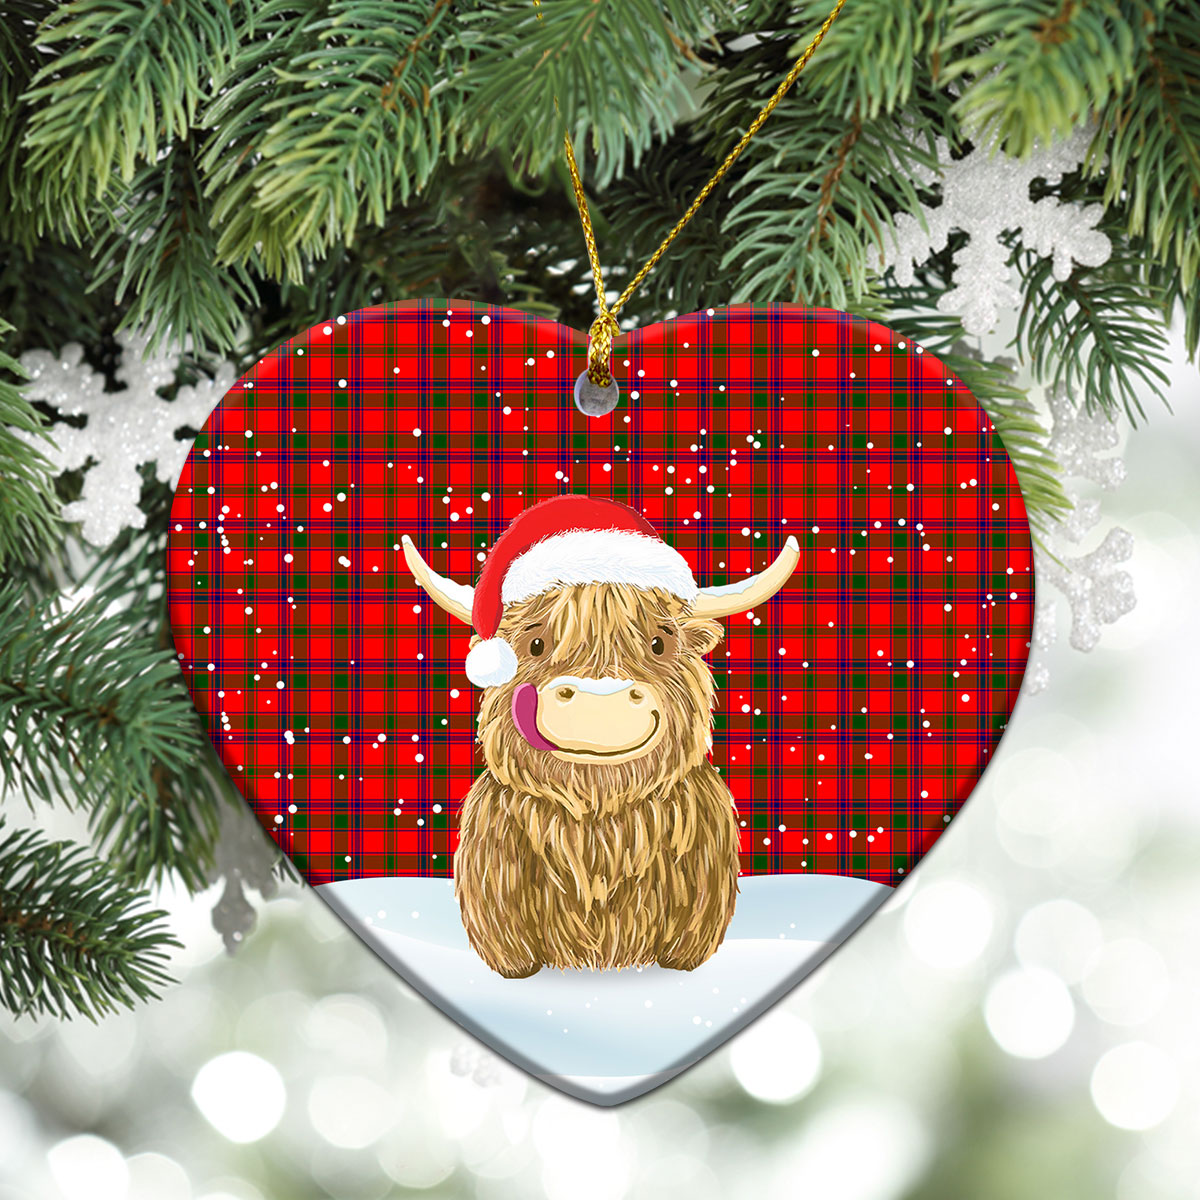 Bain Tartan Christmas Ceramic Ornament - Highland Cows Style